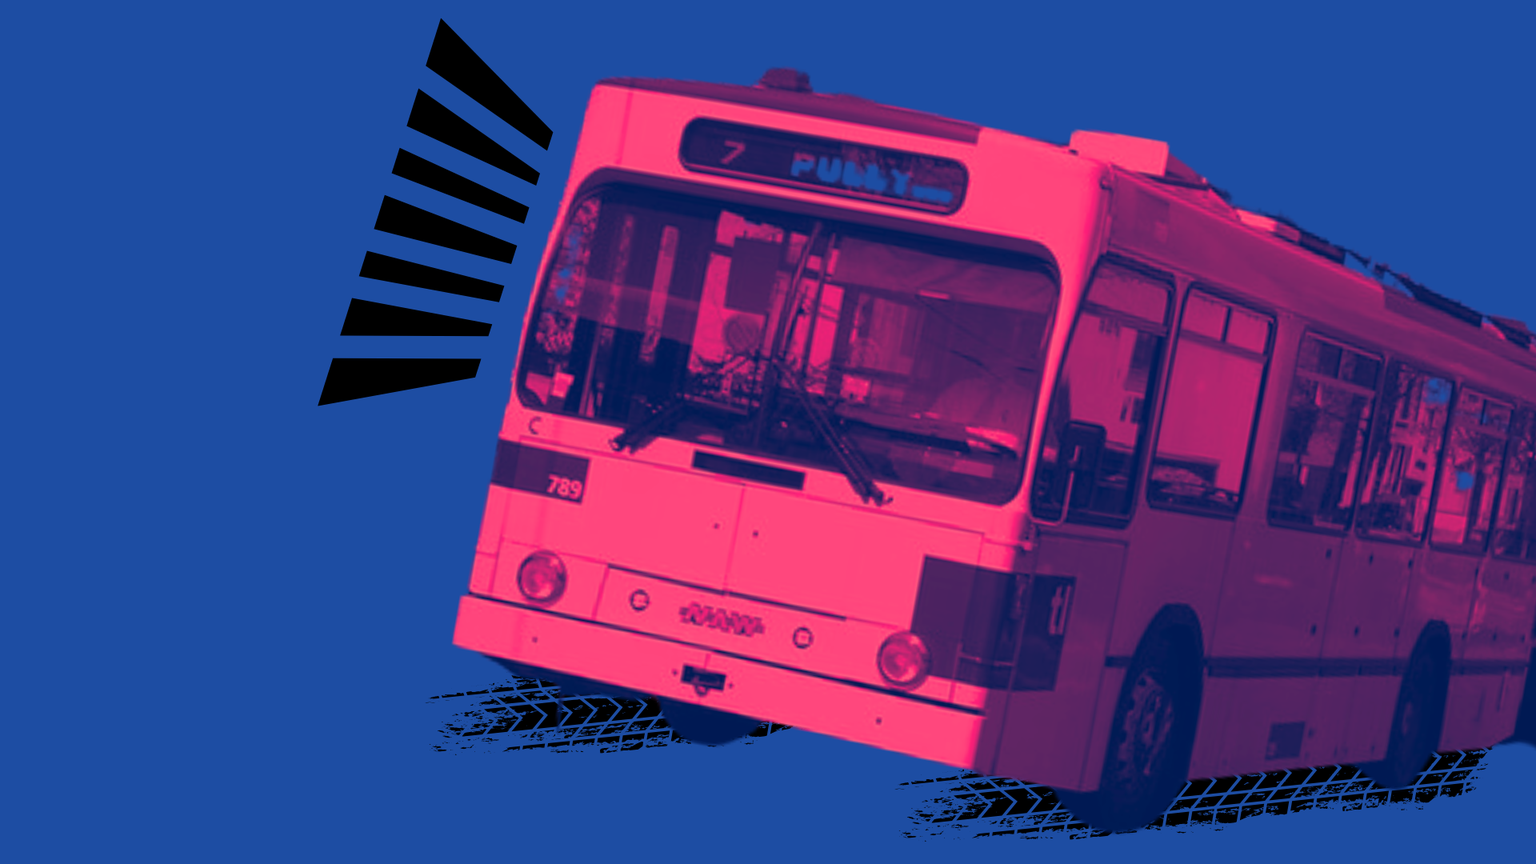 Transport public en Suisse romande: les spotters de bus sont en colère